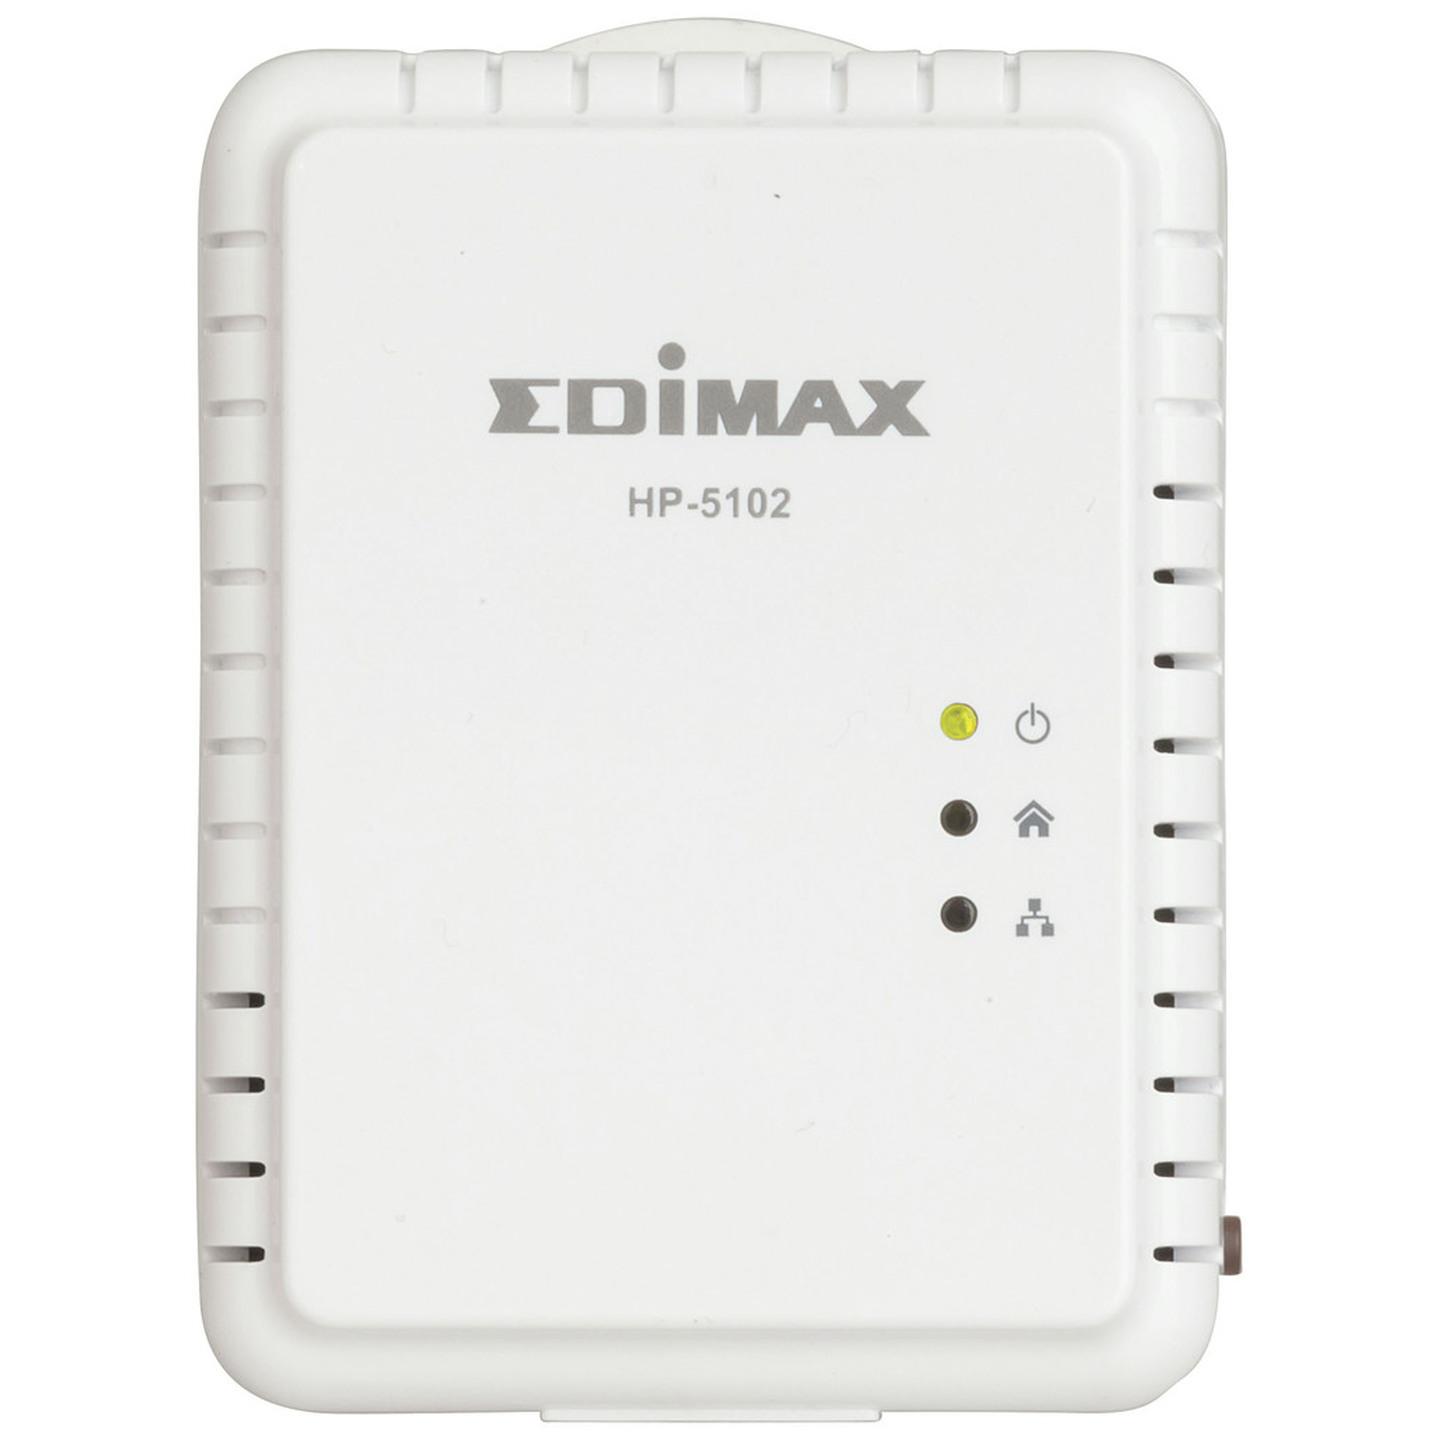 PowerLine Wi-Fi Extender with Ethernet Adaptor Kit AV500